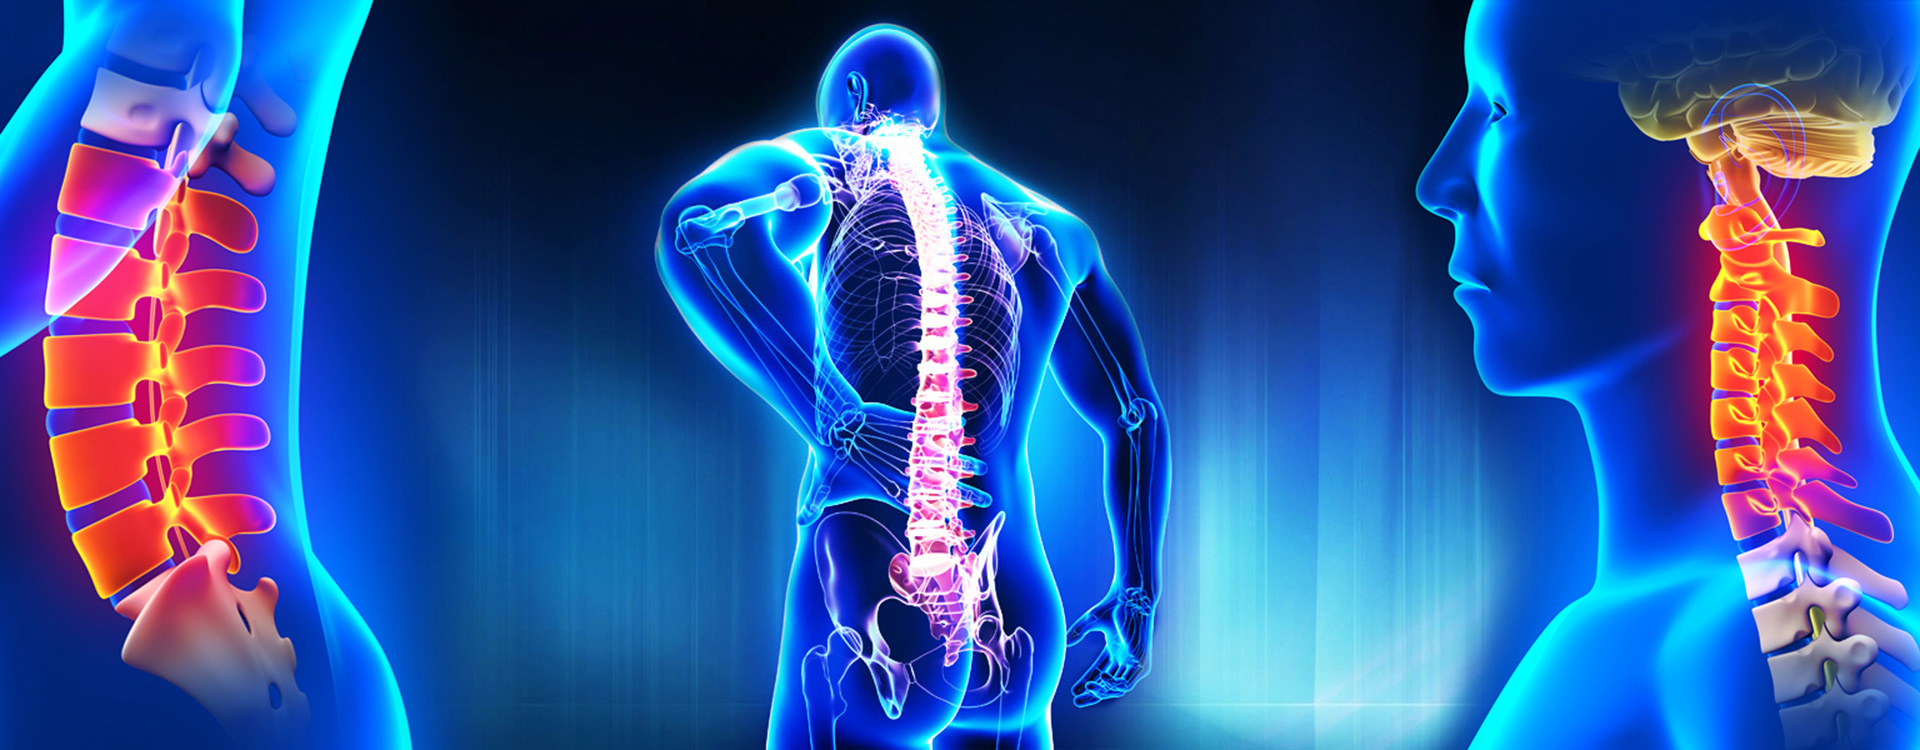 tratamentul ortopedic al articulațiilor și coloanei vertebrale)